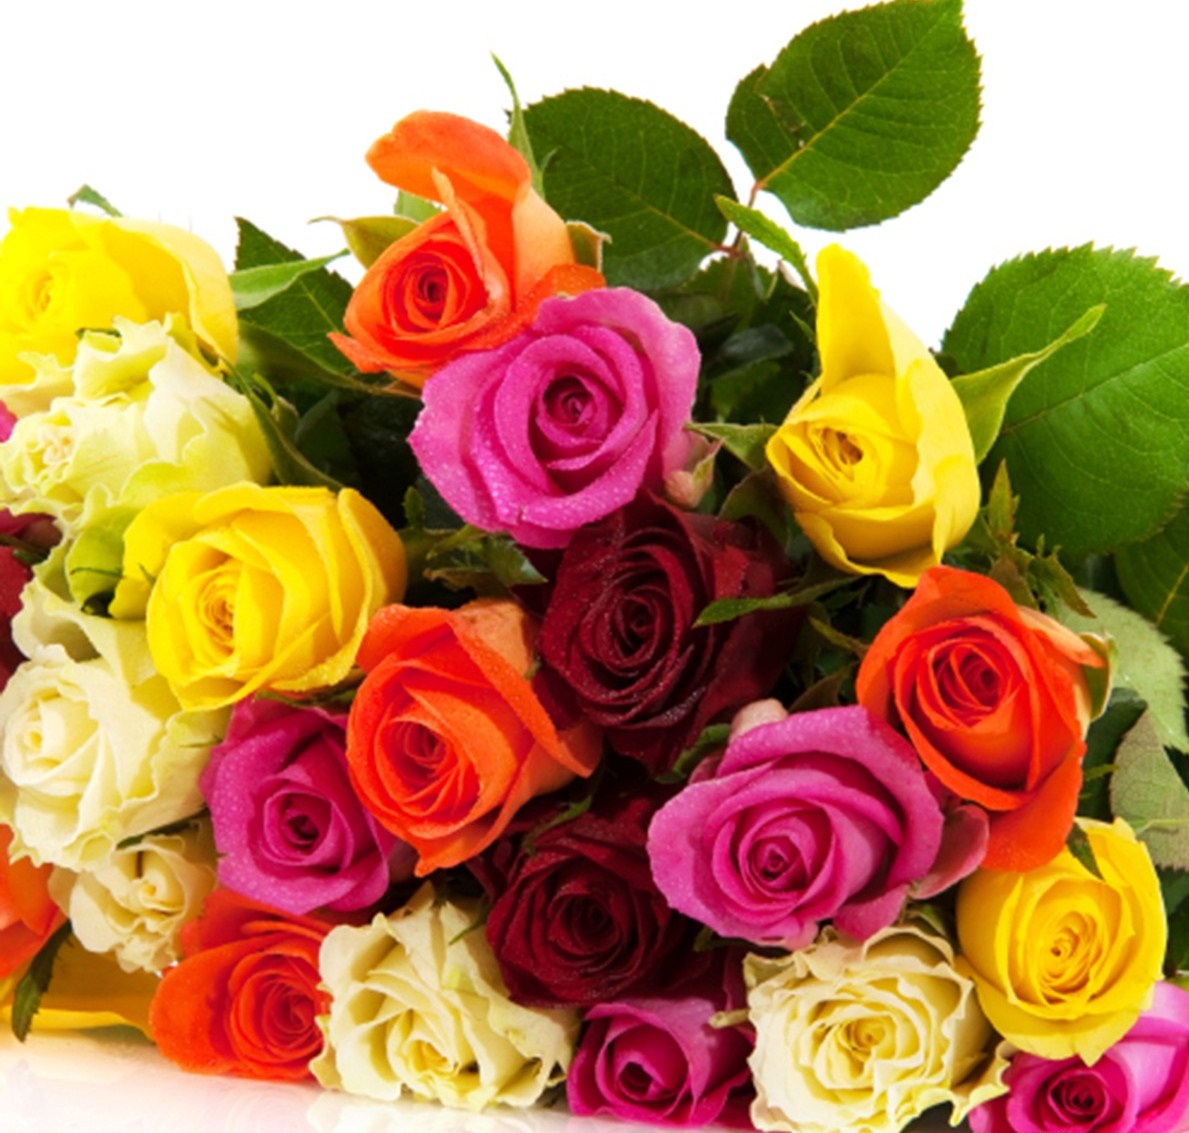 Bí quyết tặng hoa hồng ngày 20/10 cho người phụ nữ thân yêu